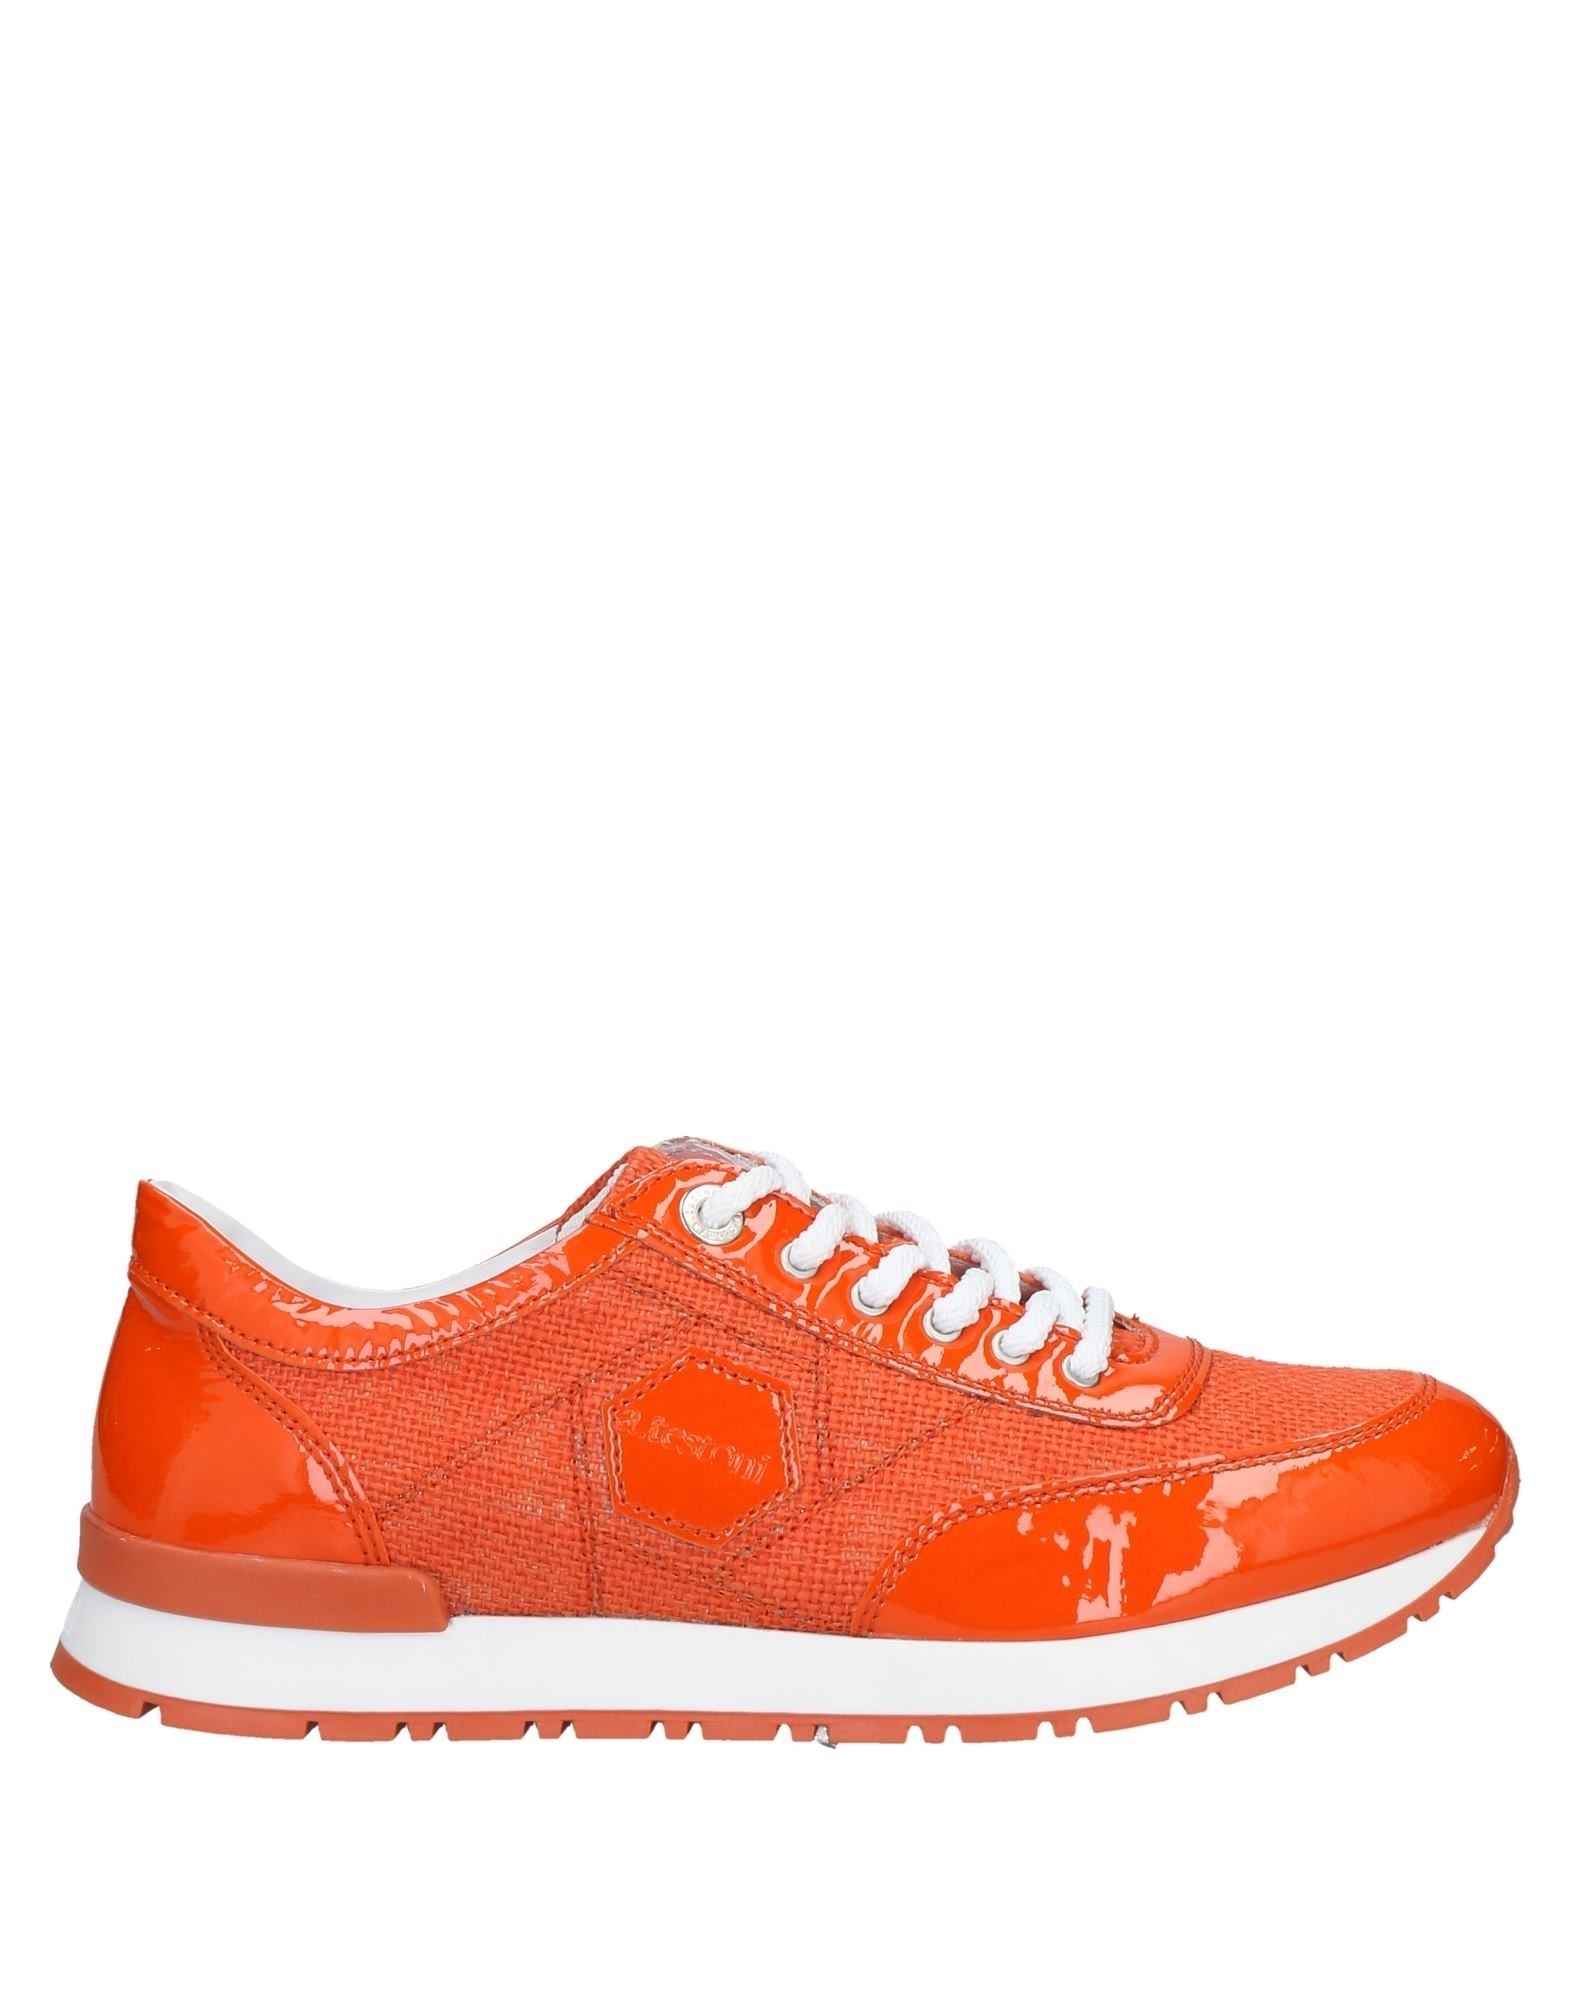 A.testoni Sneakers In Orange